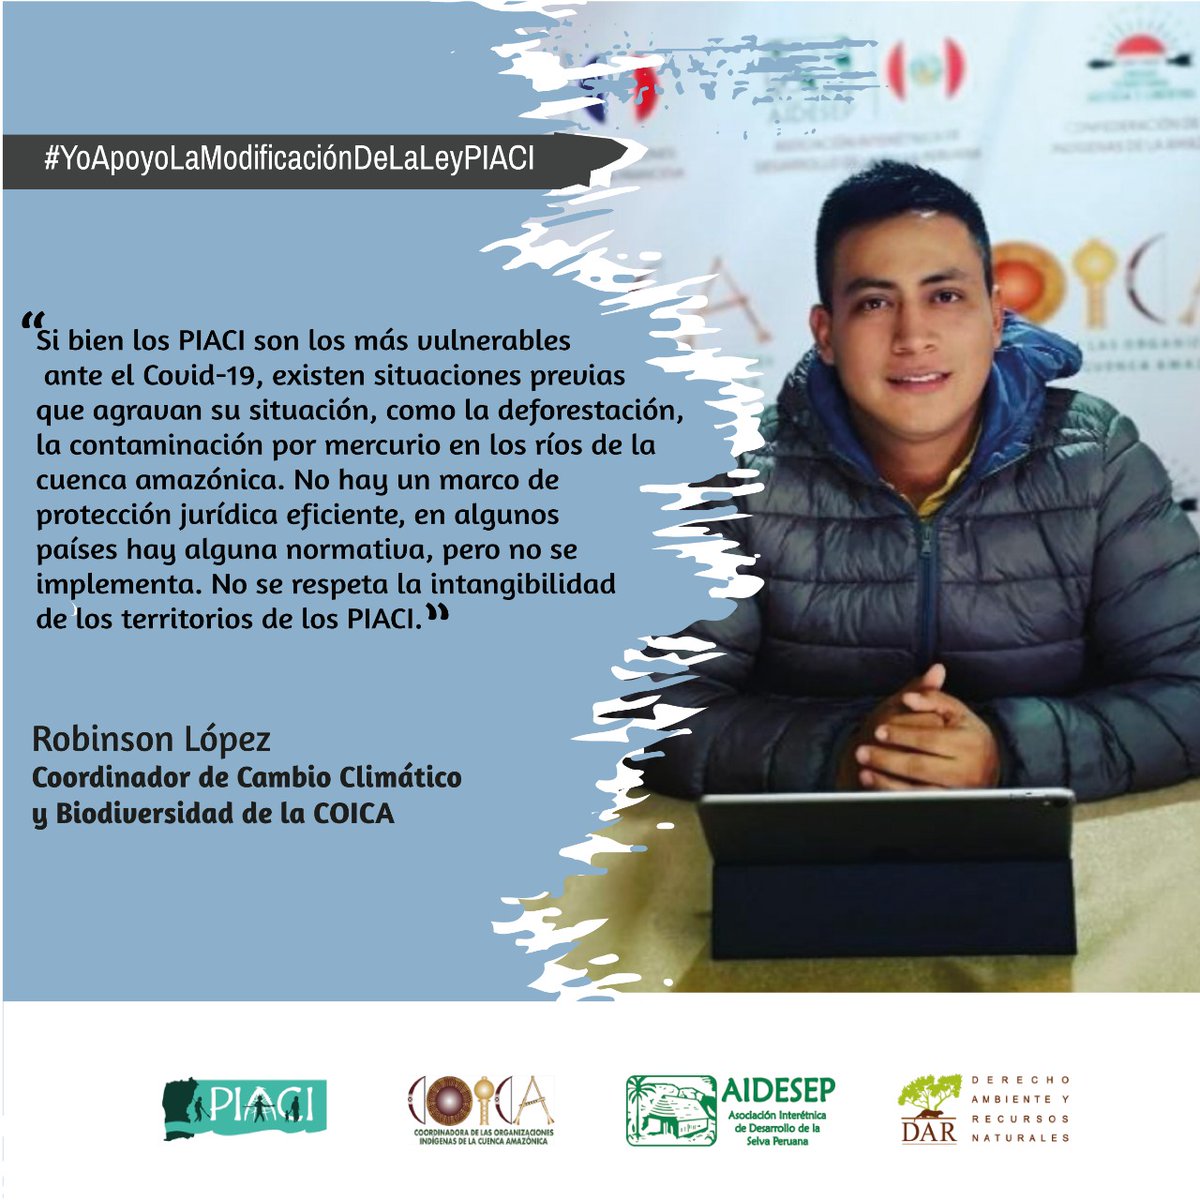 Perú | Lo que vivimos por el #COVID_19, lo viven los #PIACI por su vulnerabilidad. Se invoca respeto a la intangibilidad. #COICA se suma a la campaña para la aprobación del dictamen del PL4044 #YoApoyoLaModificaciónDeLaLeyPIACI @ONGDAR @aidesep_org @AIDESEP @MartinVizcarraC